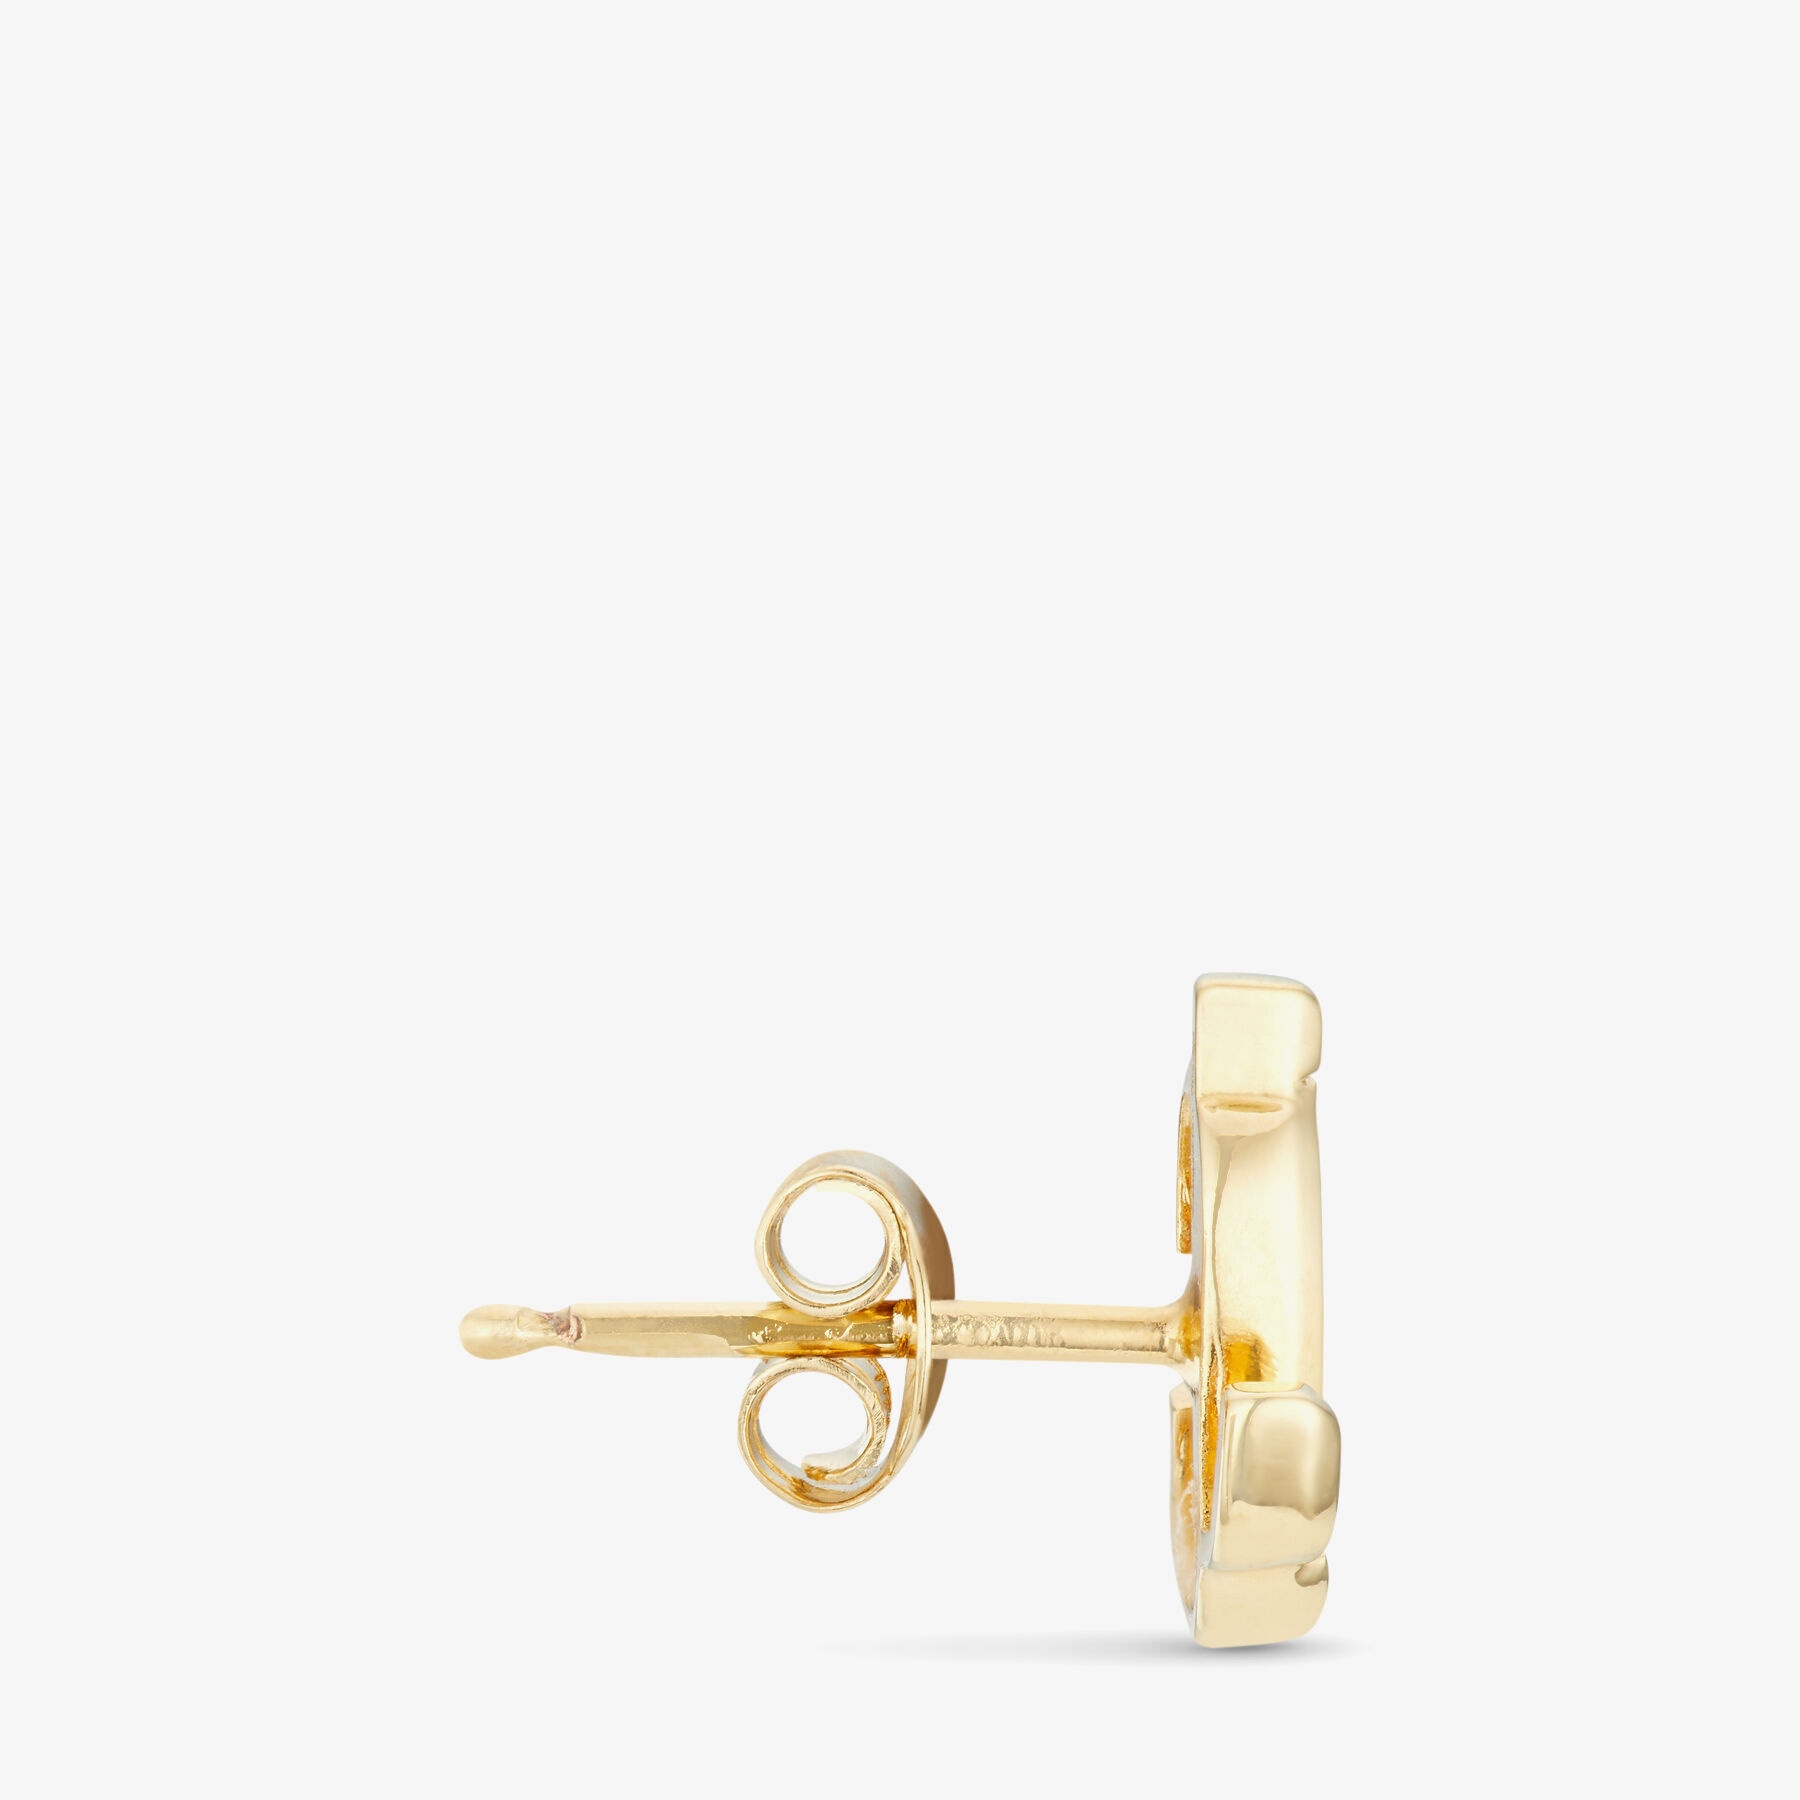 JC Mini Studs, Gold-Finish Metal JC Mini Stud Earrings